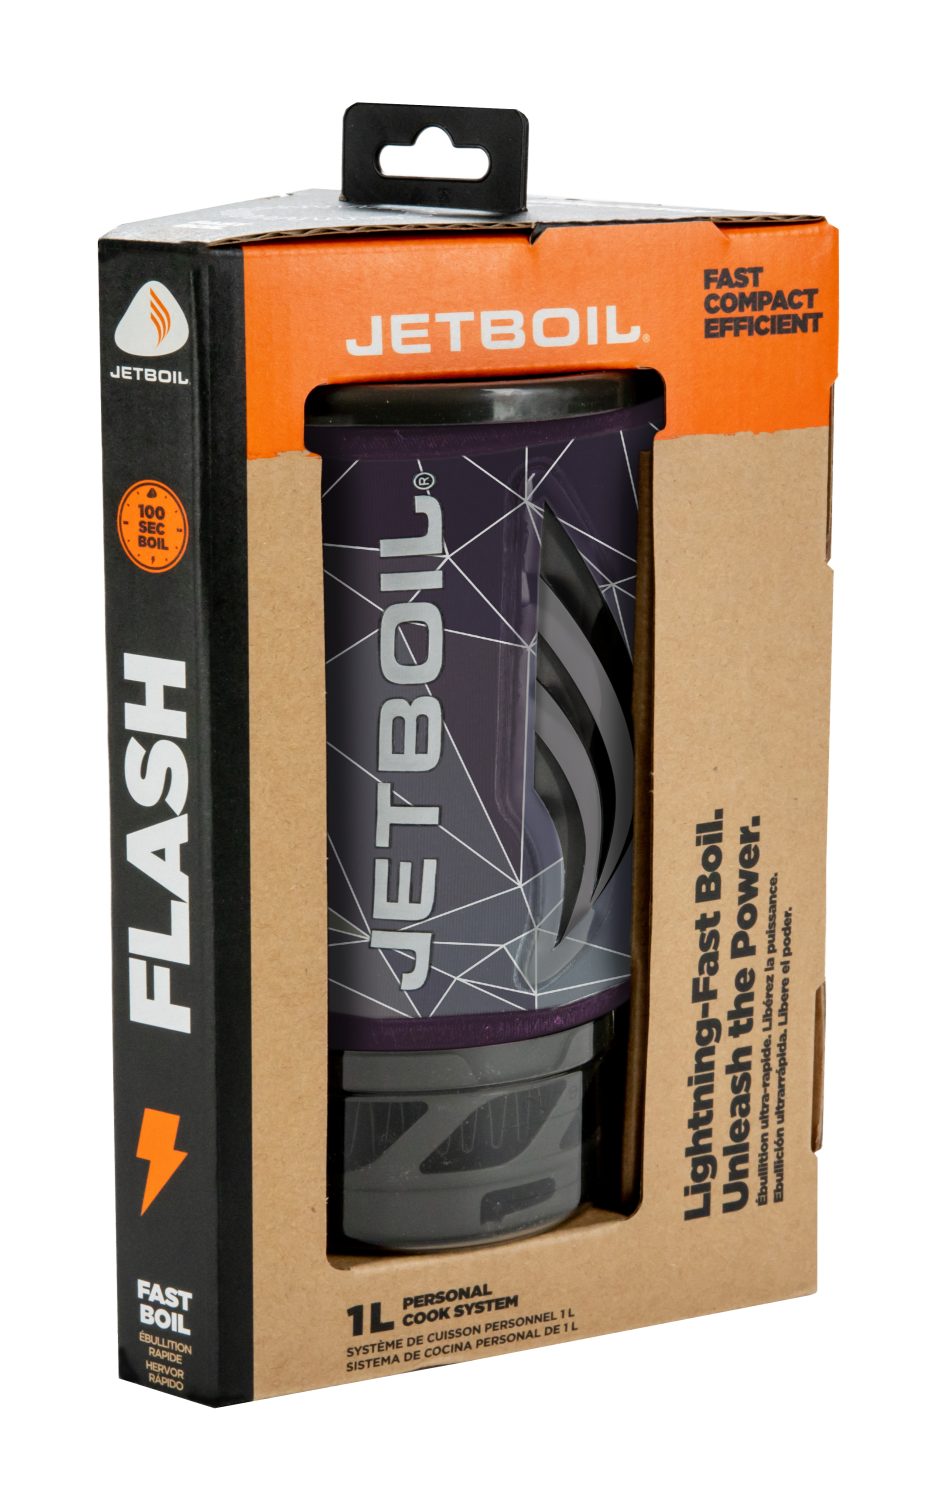 Jetboil All-in-one Jetboil Flash Gaskocher Kochsystem